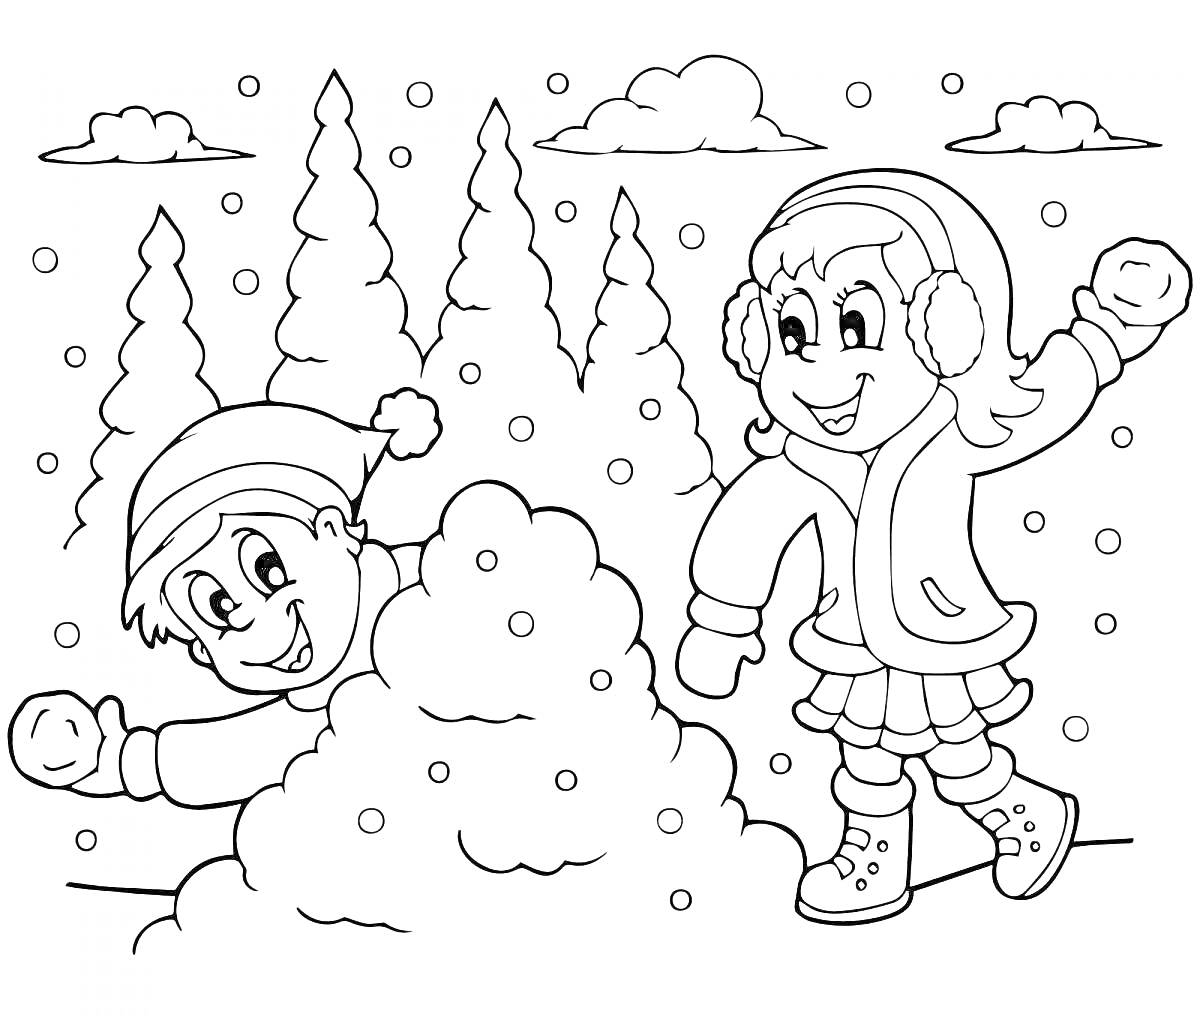 Раскраска Дети играют в снежки на фоне заснеженного леса